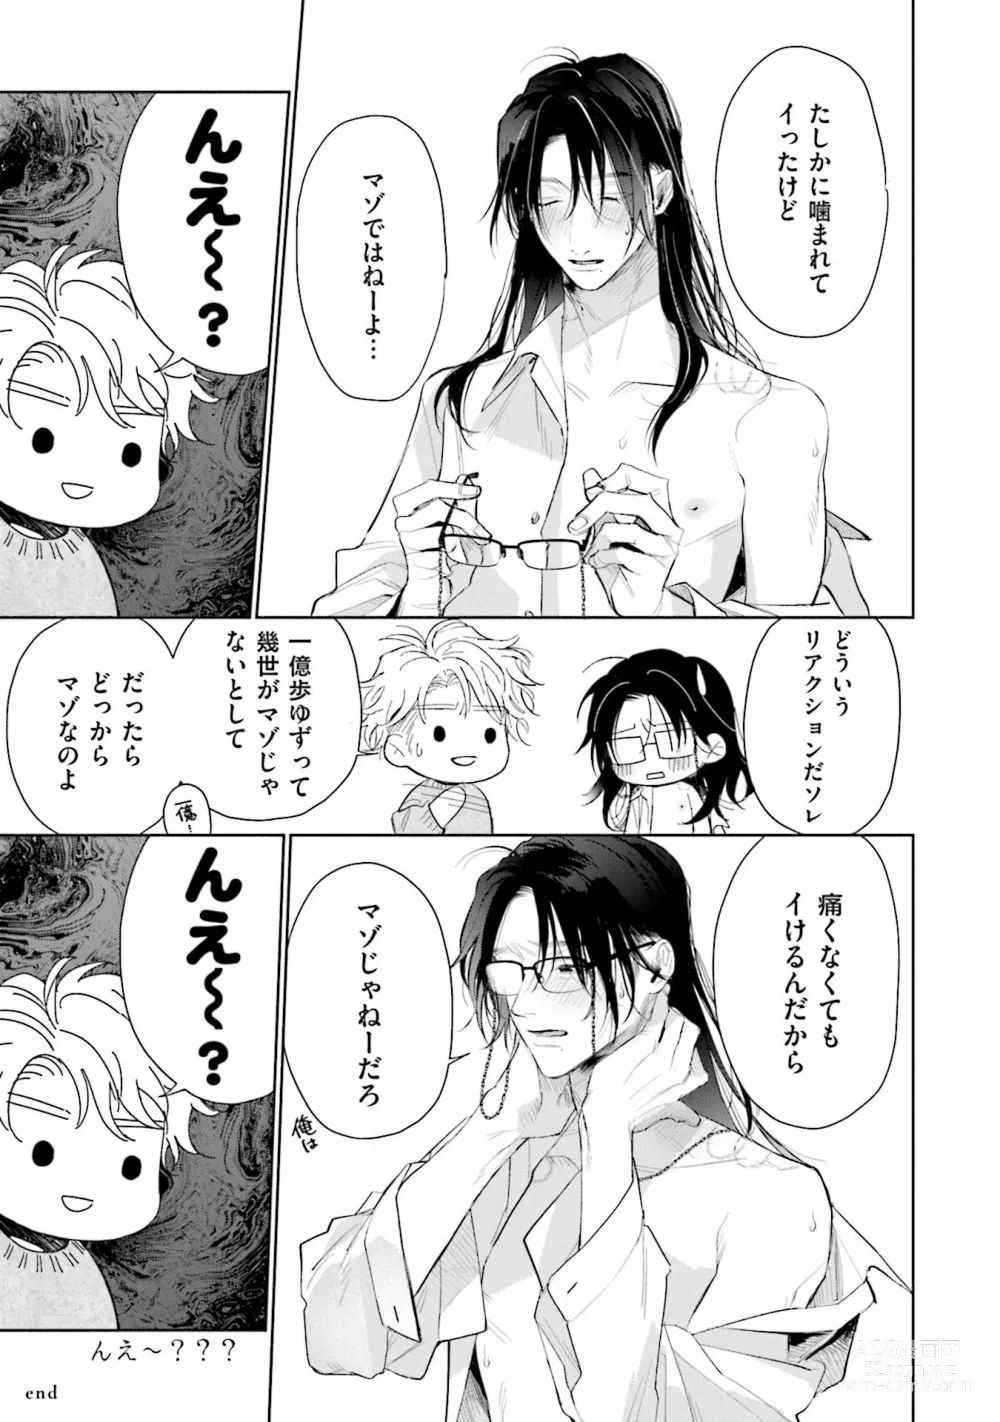 Page 223 of manga Hitoriyogari no Vanilla